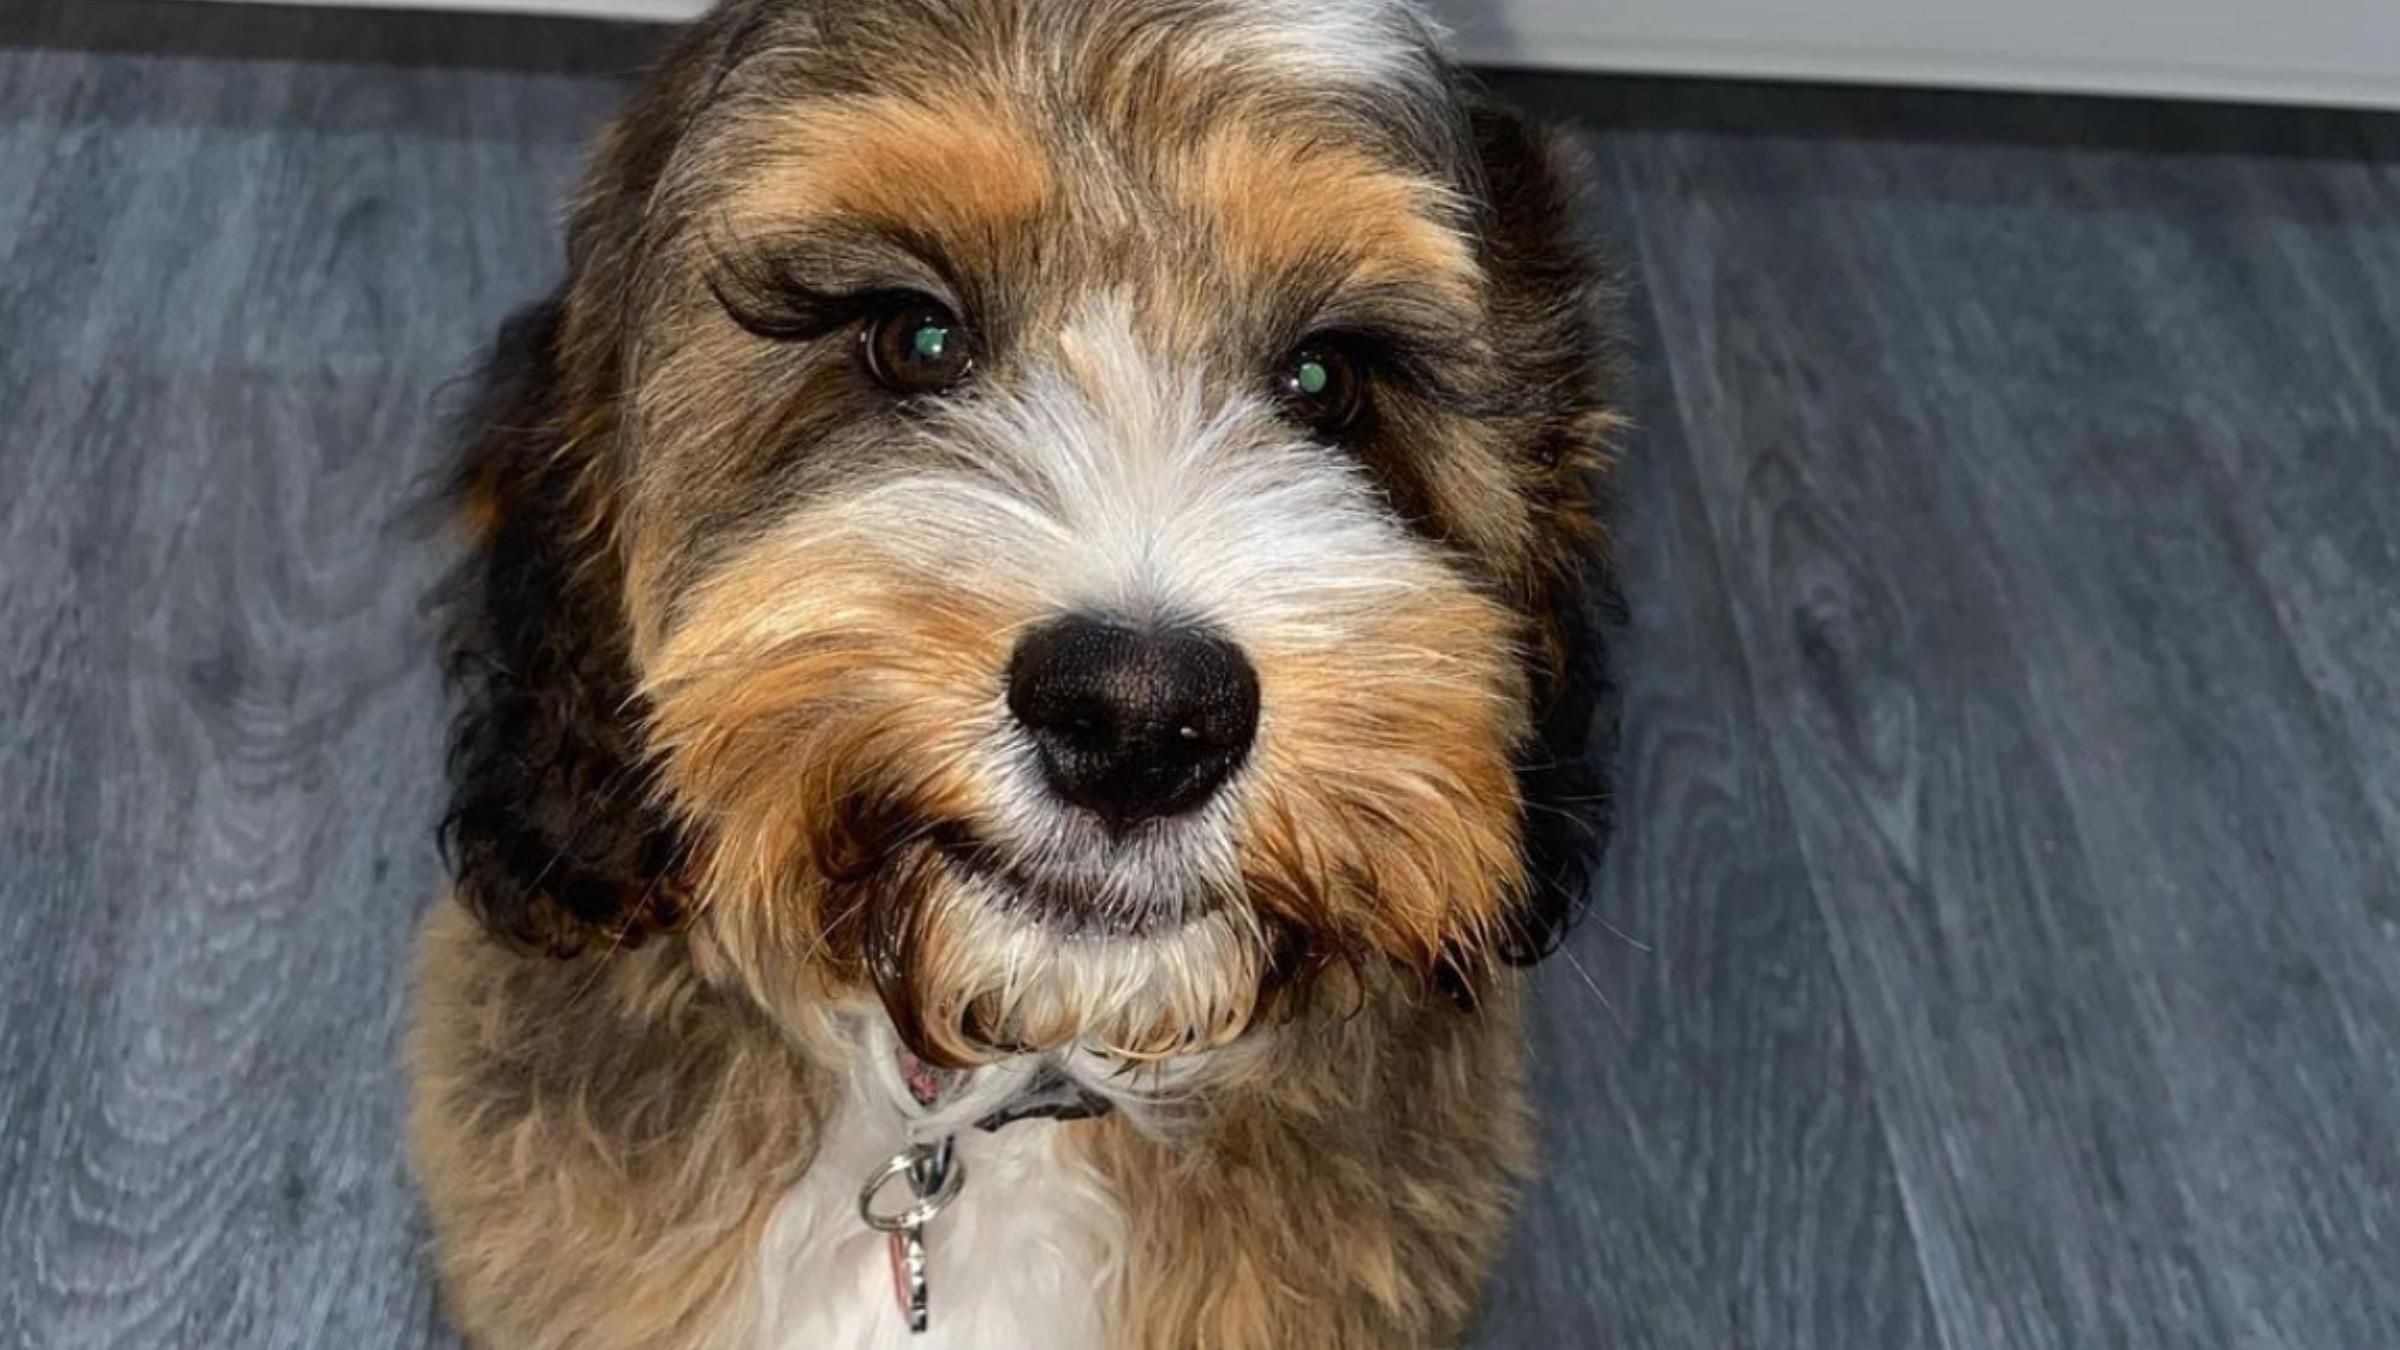 Словно наращенные: собака с длинными ресницами удивила соцсети - Pets